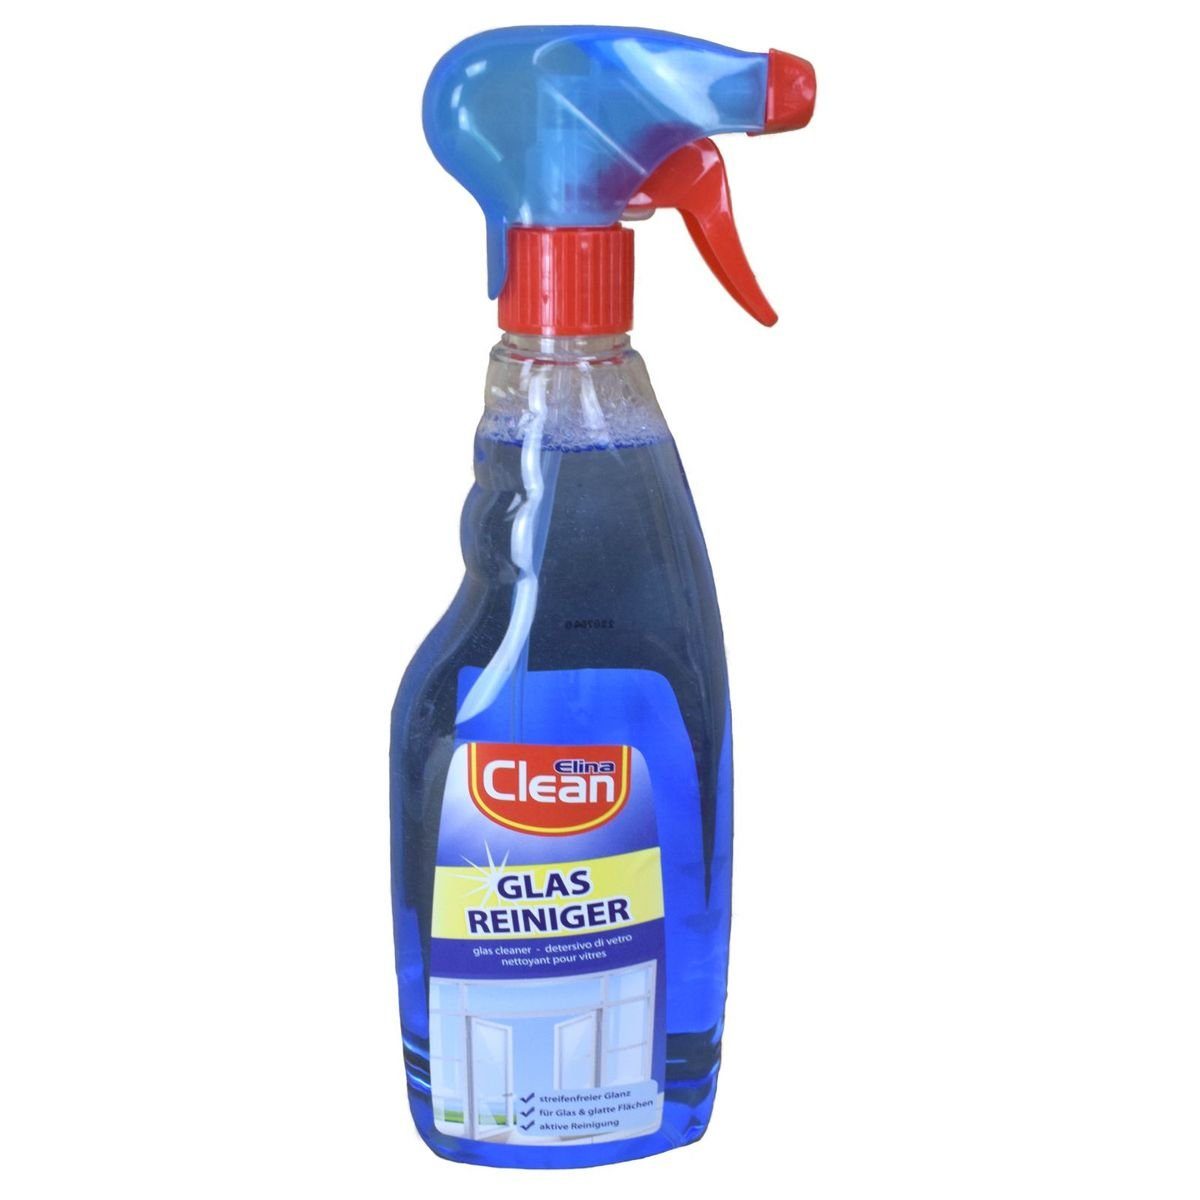 Jean Products Elina Clean Glasreiniger ca. 750 ml Reiniger Glas und glatte Flächen Reinigungsspray (verstellbarer Drucksprühkopf)